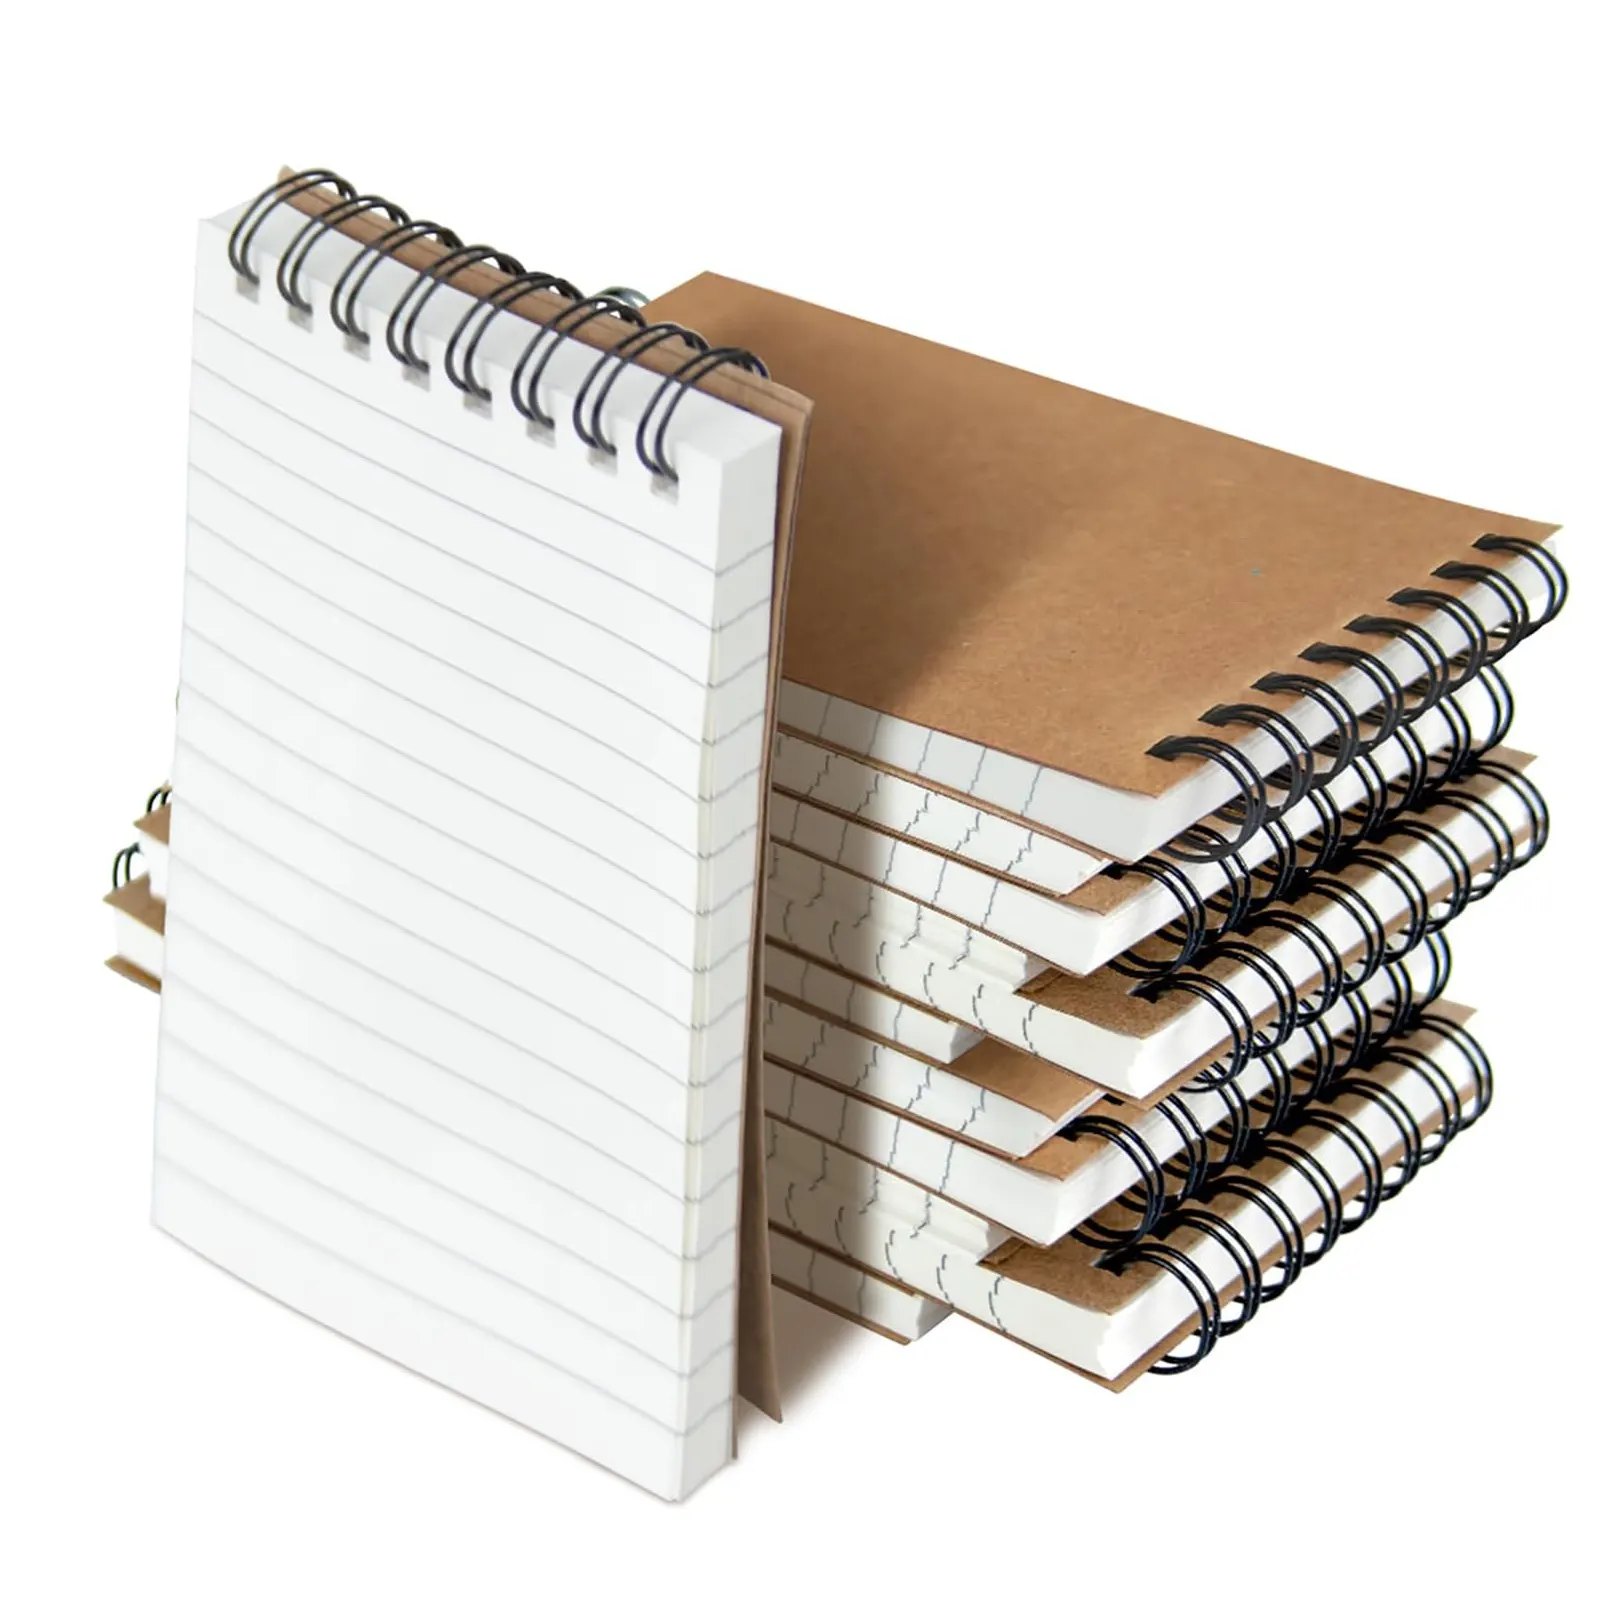 Mini cahier de poche à spirale bon marché pour le bureau, l'académie, le travail, le papier fait main